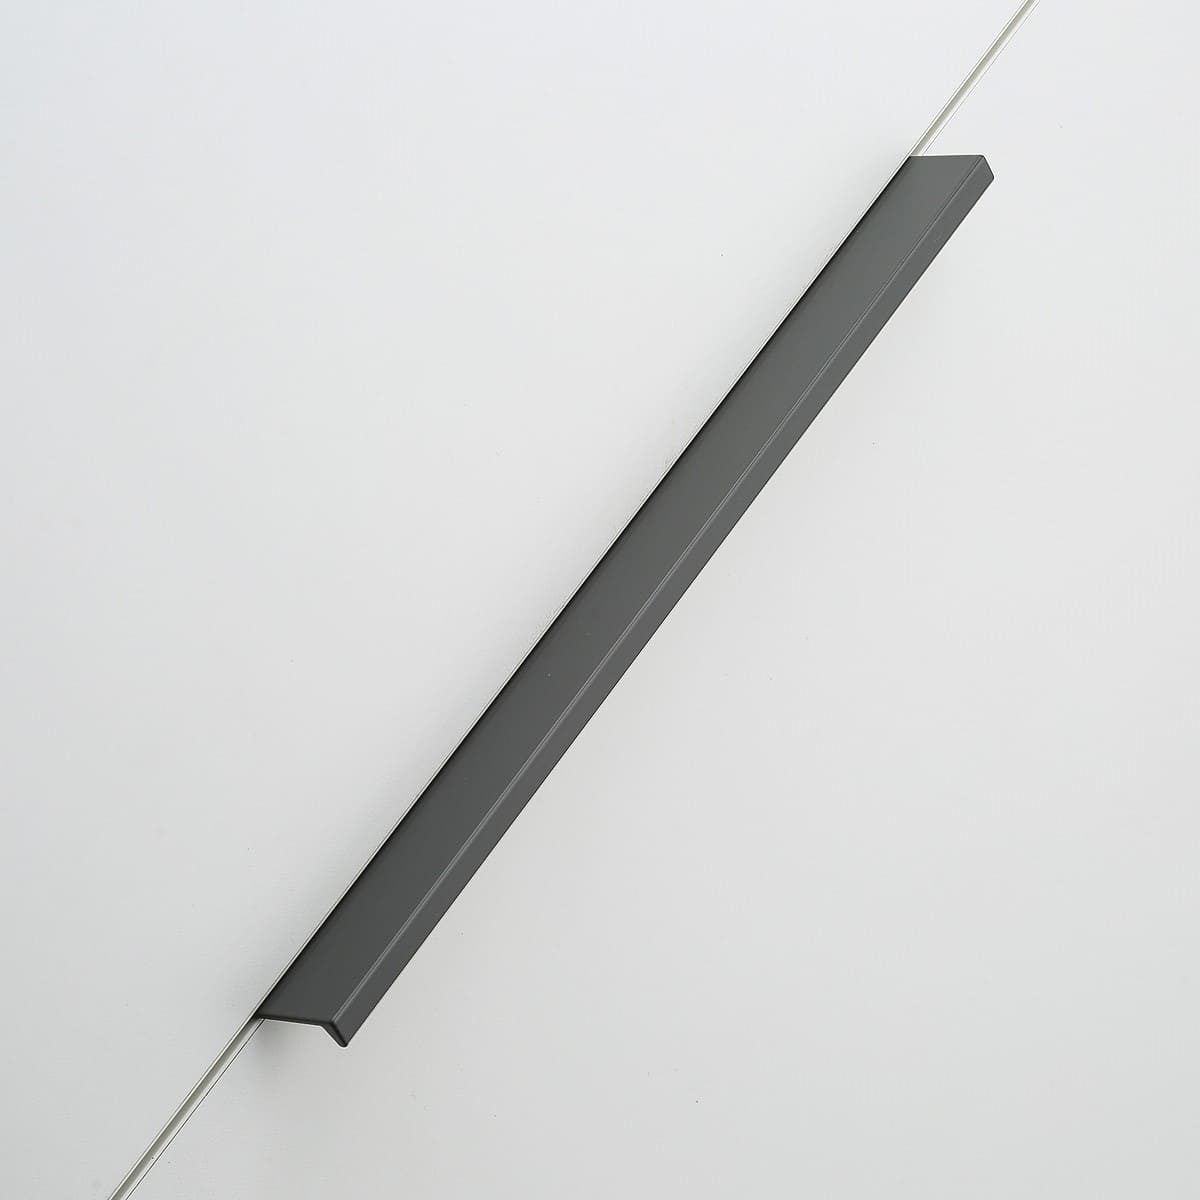 Ручка мебельная алюминиевая HEXI 256мм/290мм, антрацит GTV UA-HEXI-256-60 19530 Ручка мебельная алюминиевая HEXI 256мм/290мм, антрацит - фото 6